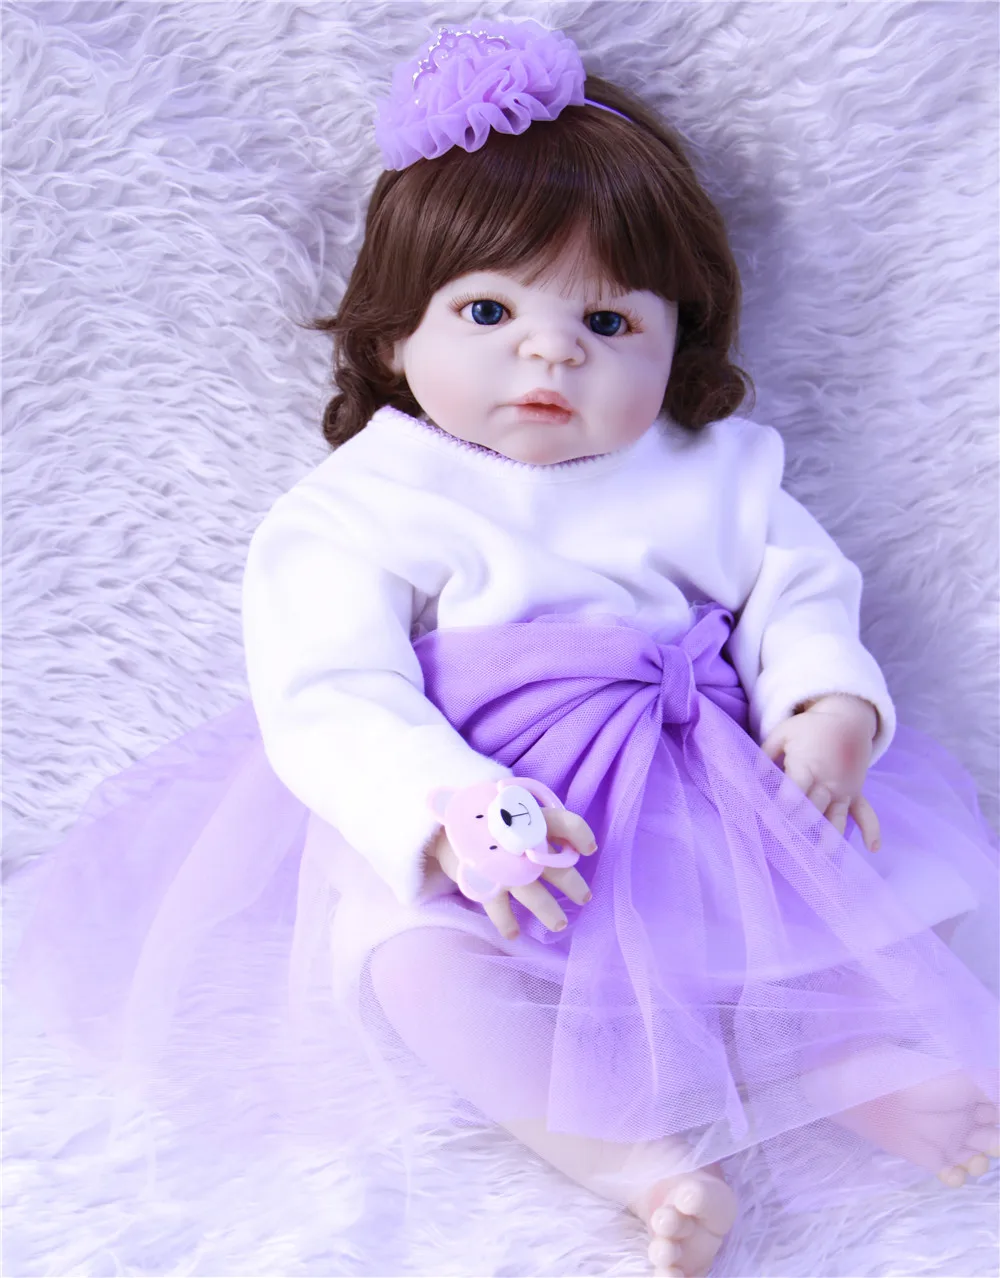 

Кукла реборн NPK, полностью силиконовая кукла-принцесса 23 дюйма, поддельные детские игрушки, подарок для ребенка, детская кукла-реборн